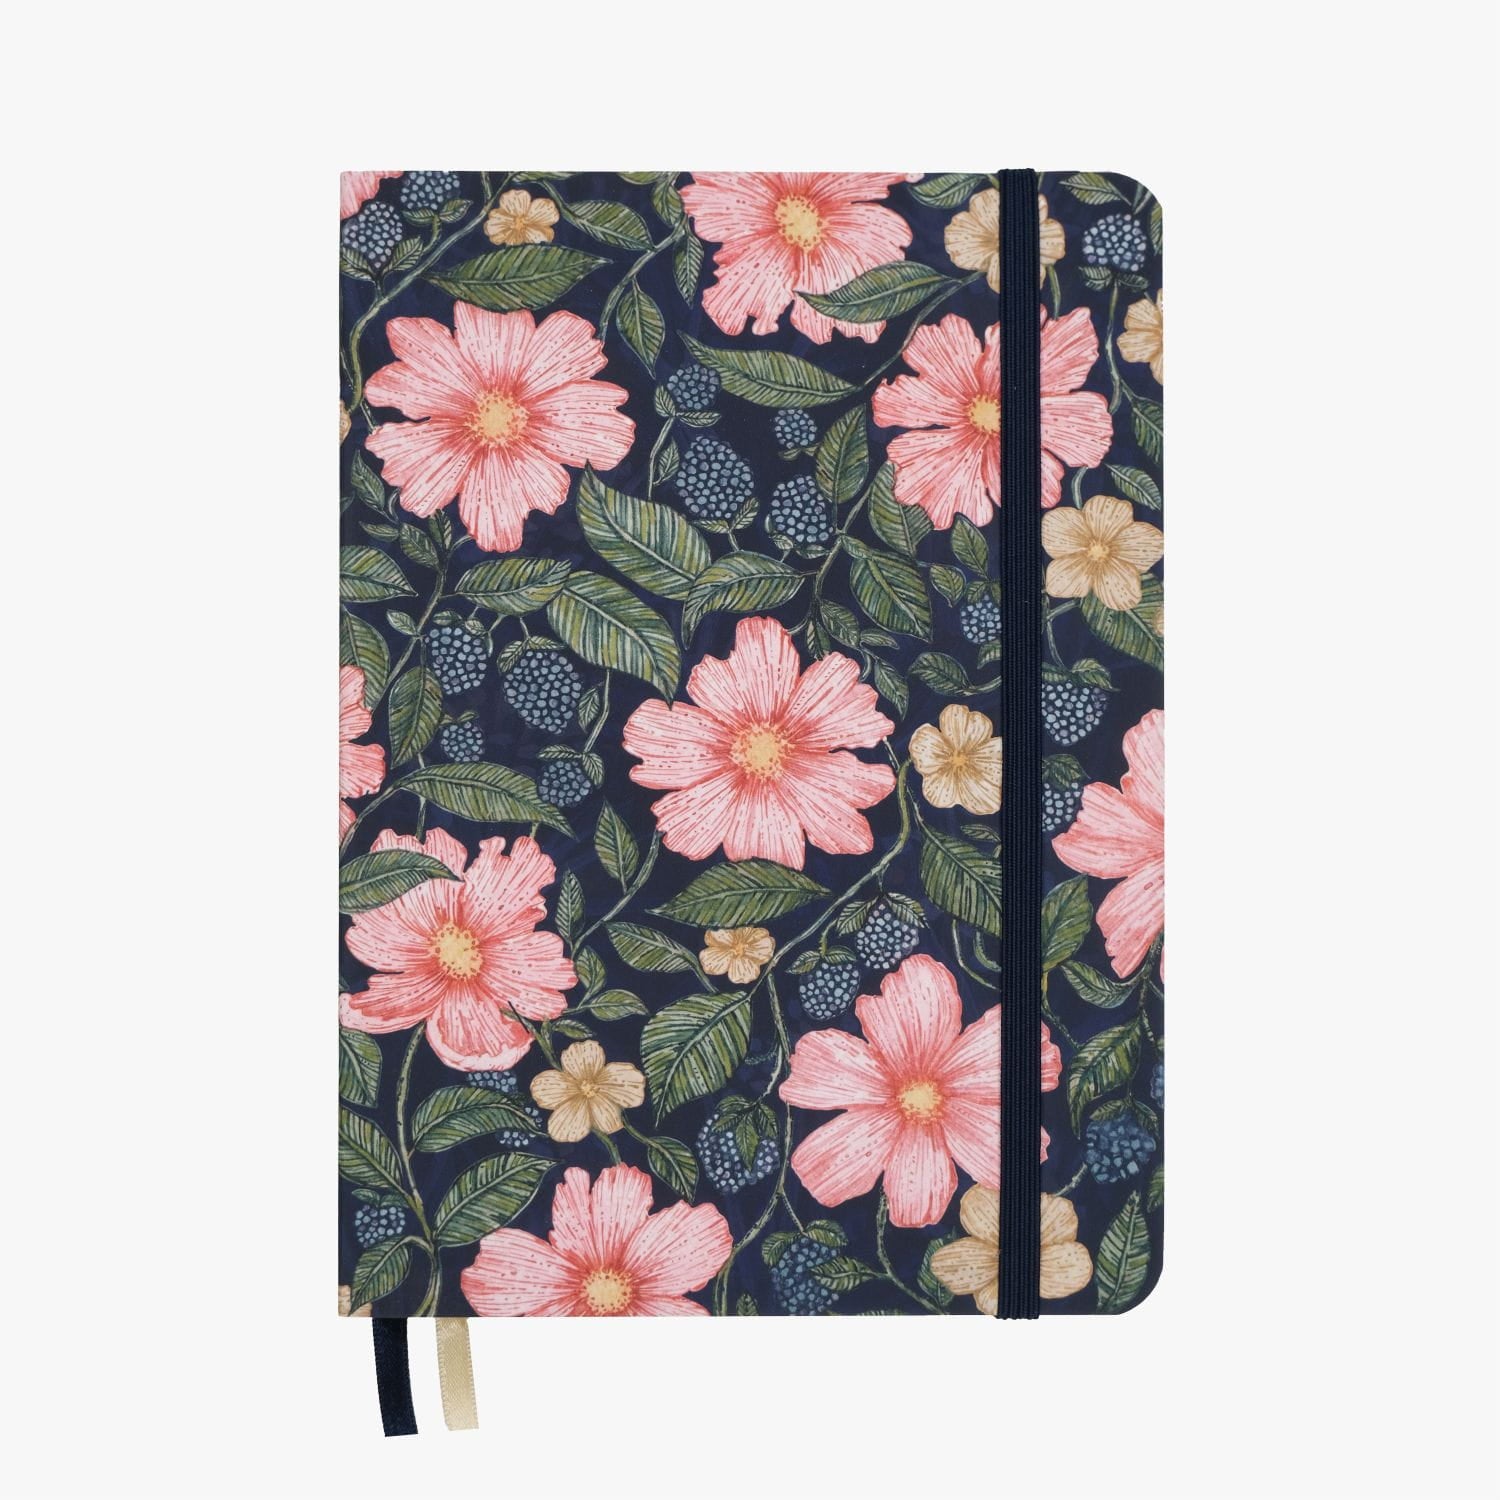 Enchanted Garden est un carnet avec une couverture souple et le papier pointillé de 120g en format A5. Il est parfait pour votre journal, bullet journal, carnet de voyage, bloc de dessin et tous vos autres projets d'écriture.